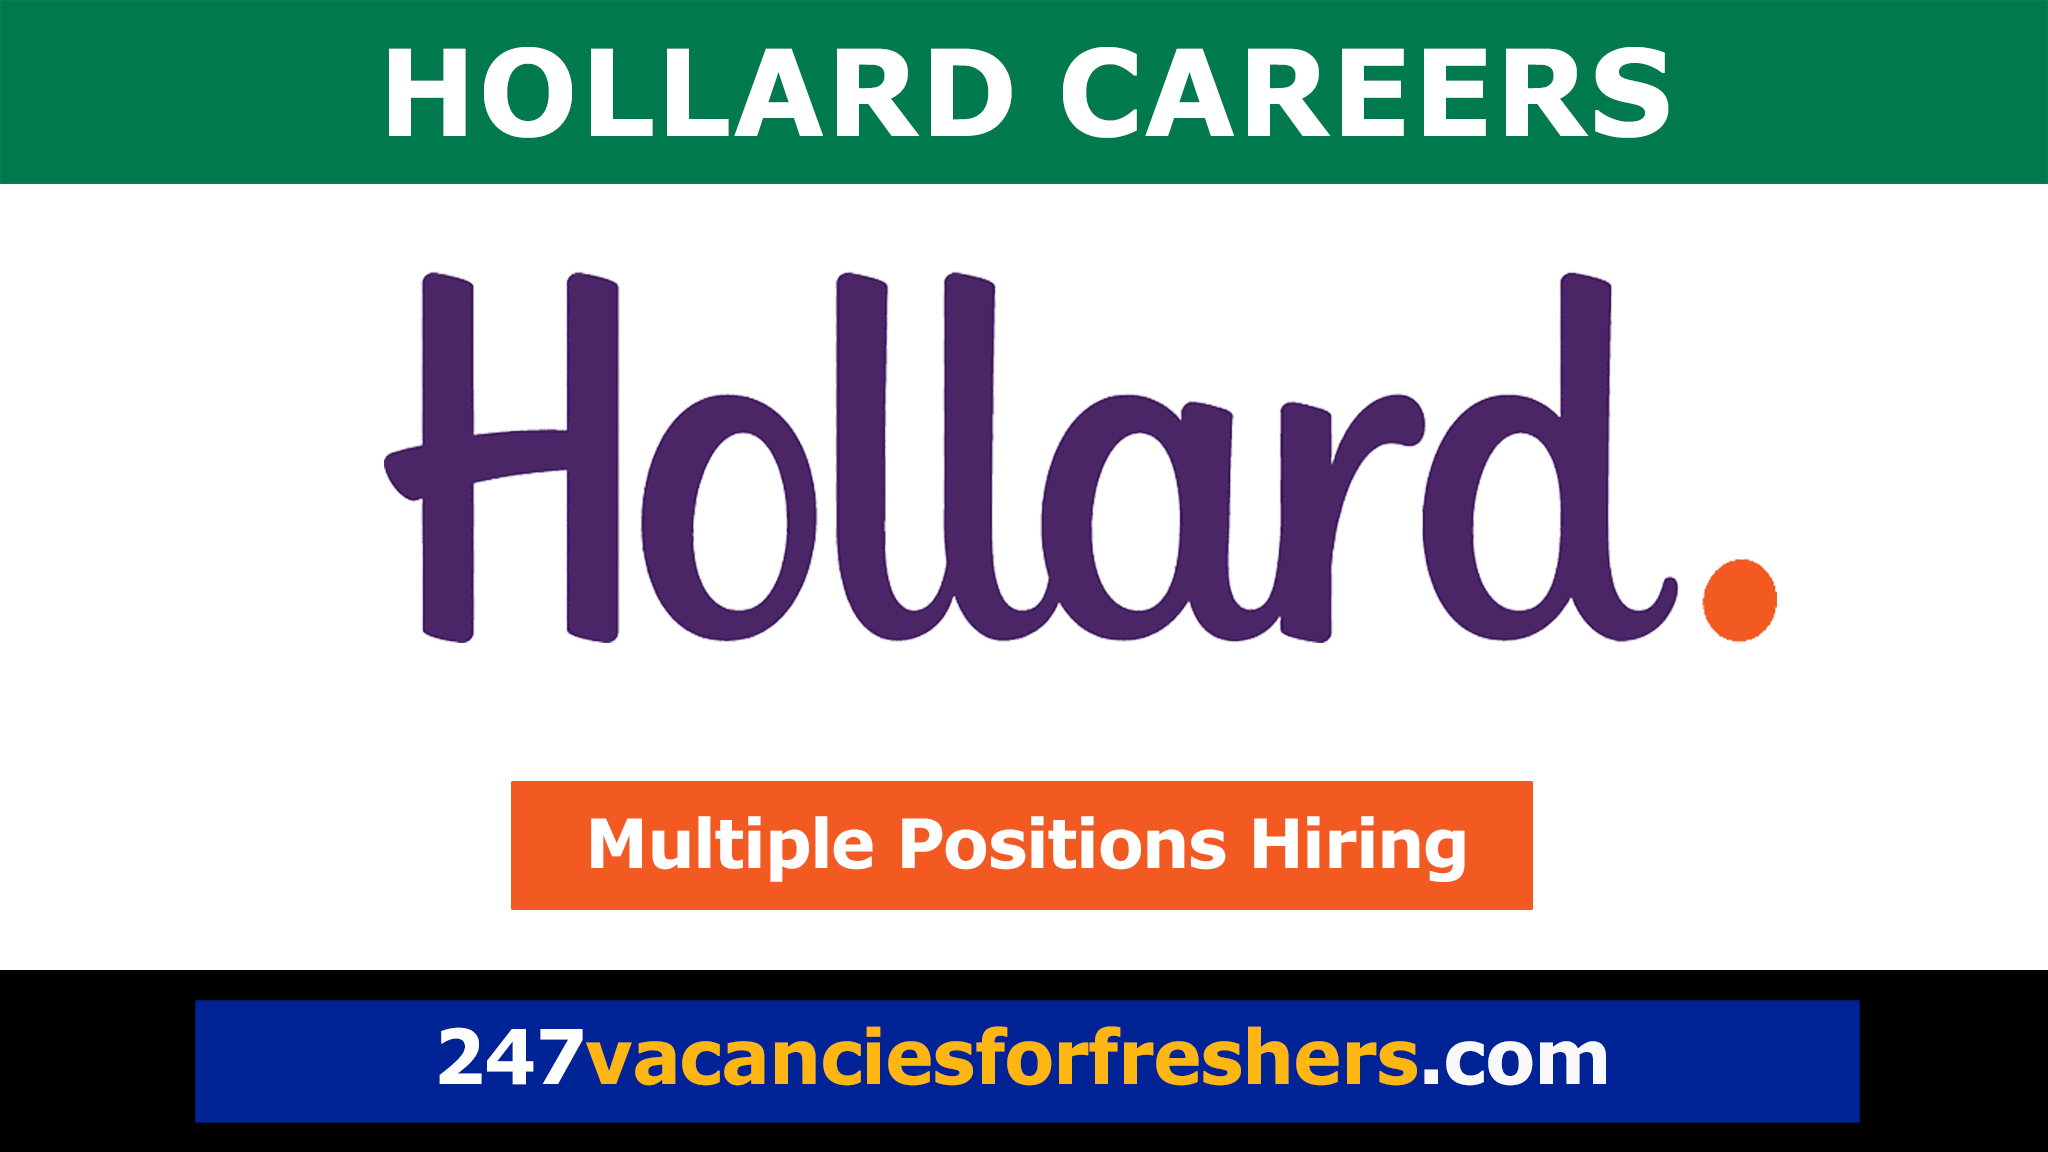 Hollard Careers